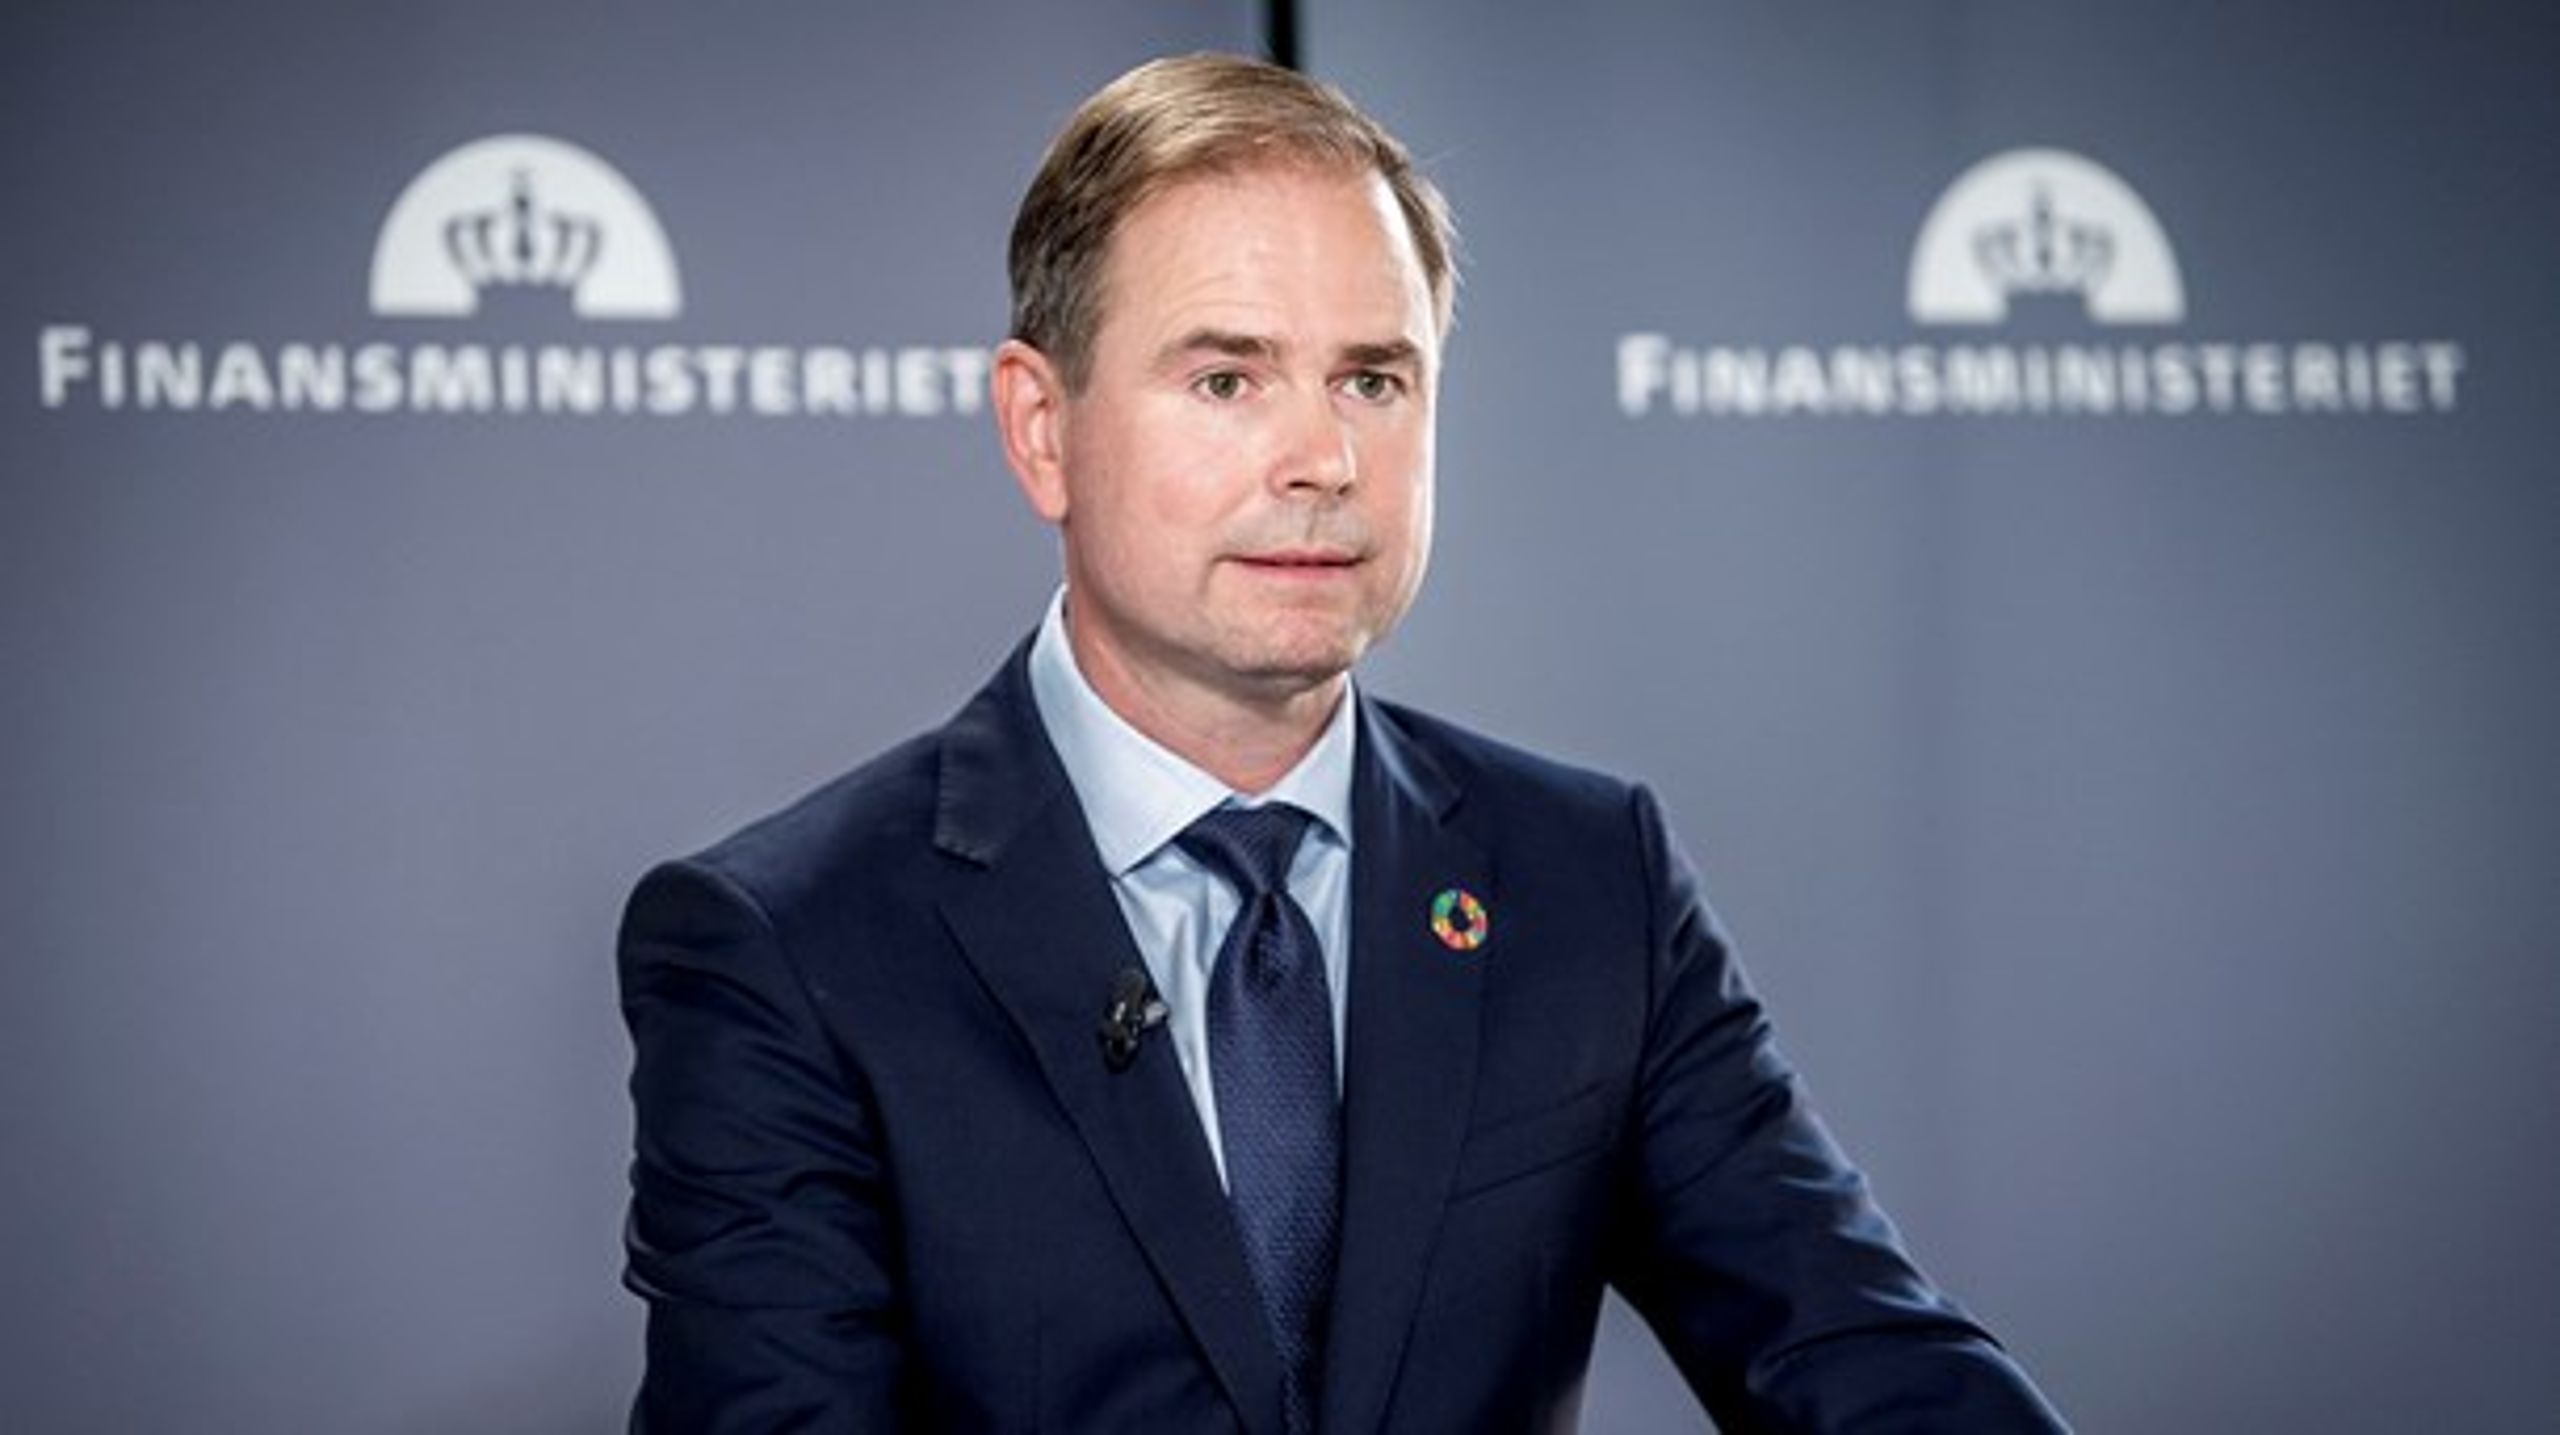 Regeringen med finansminister Nicolai Wammen i spidsen ventes at præsentere et finanslovsforslag for 2020 i slutningen af september.